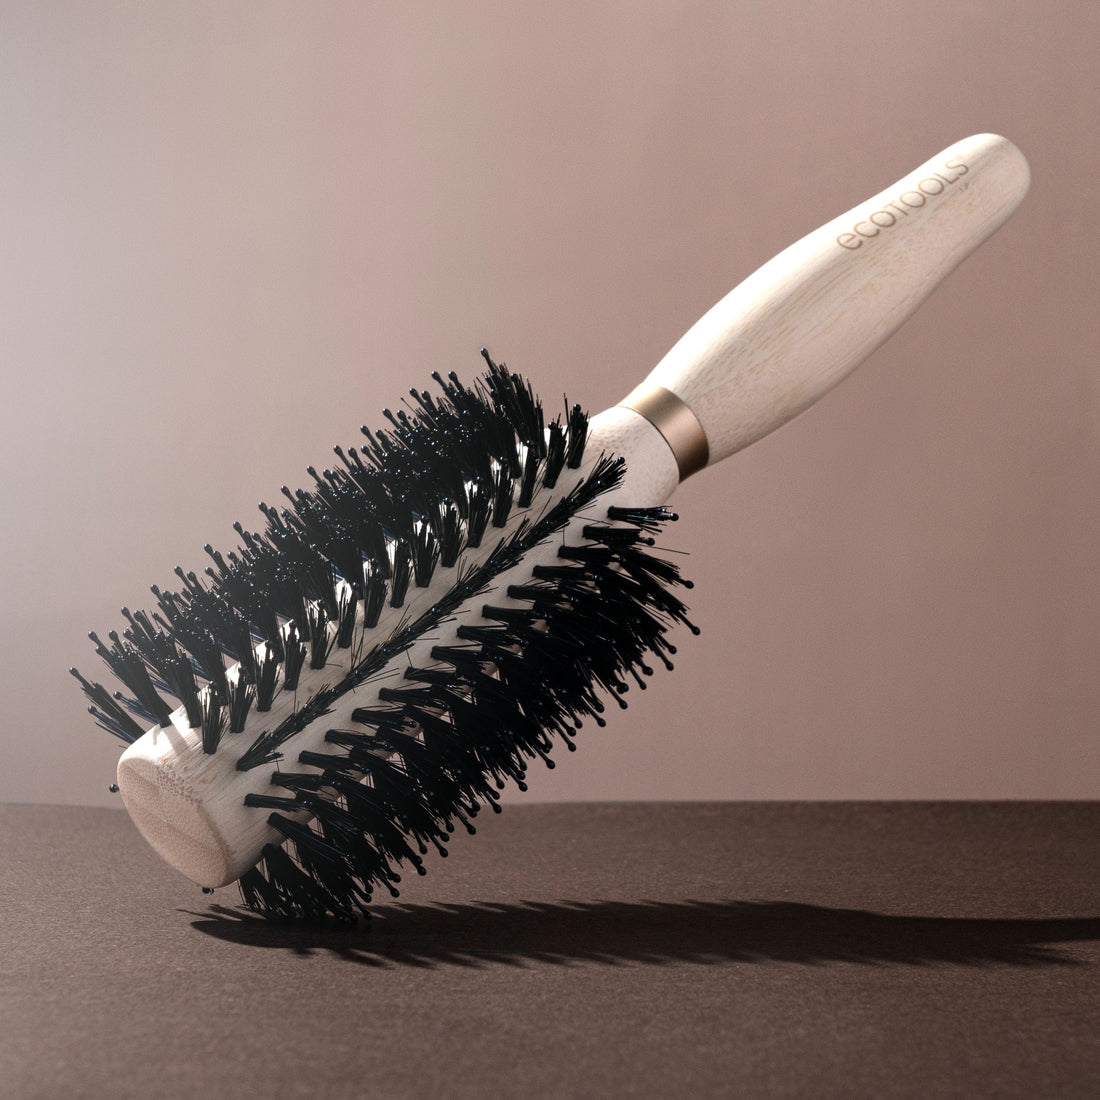 100% Boar Bristle Hair Brush – Beauty by Earth